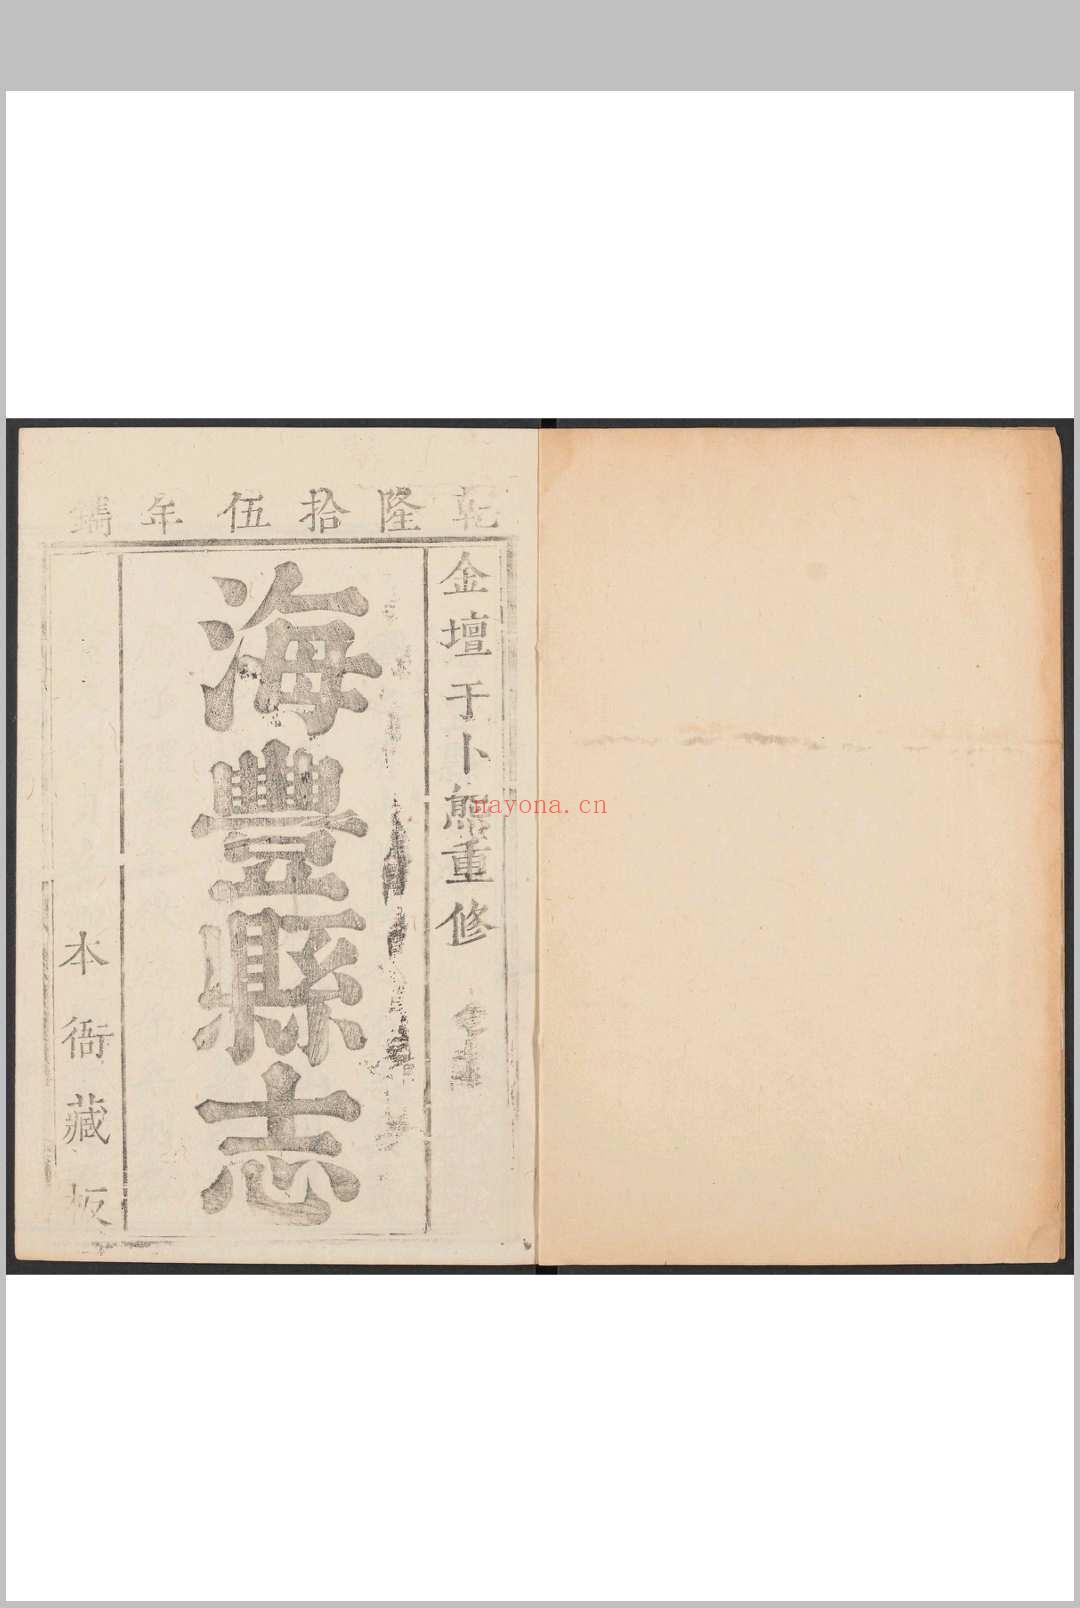 海丰县志  10卷, 卷末  1卷 于卜熊纂修.乾隆15年